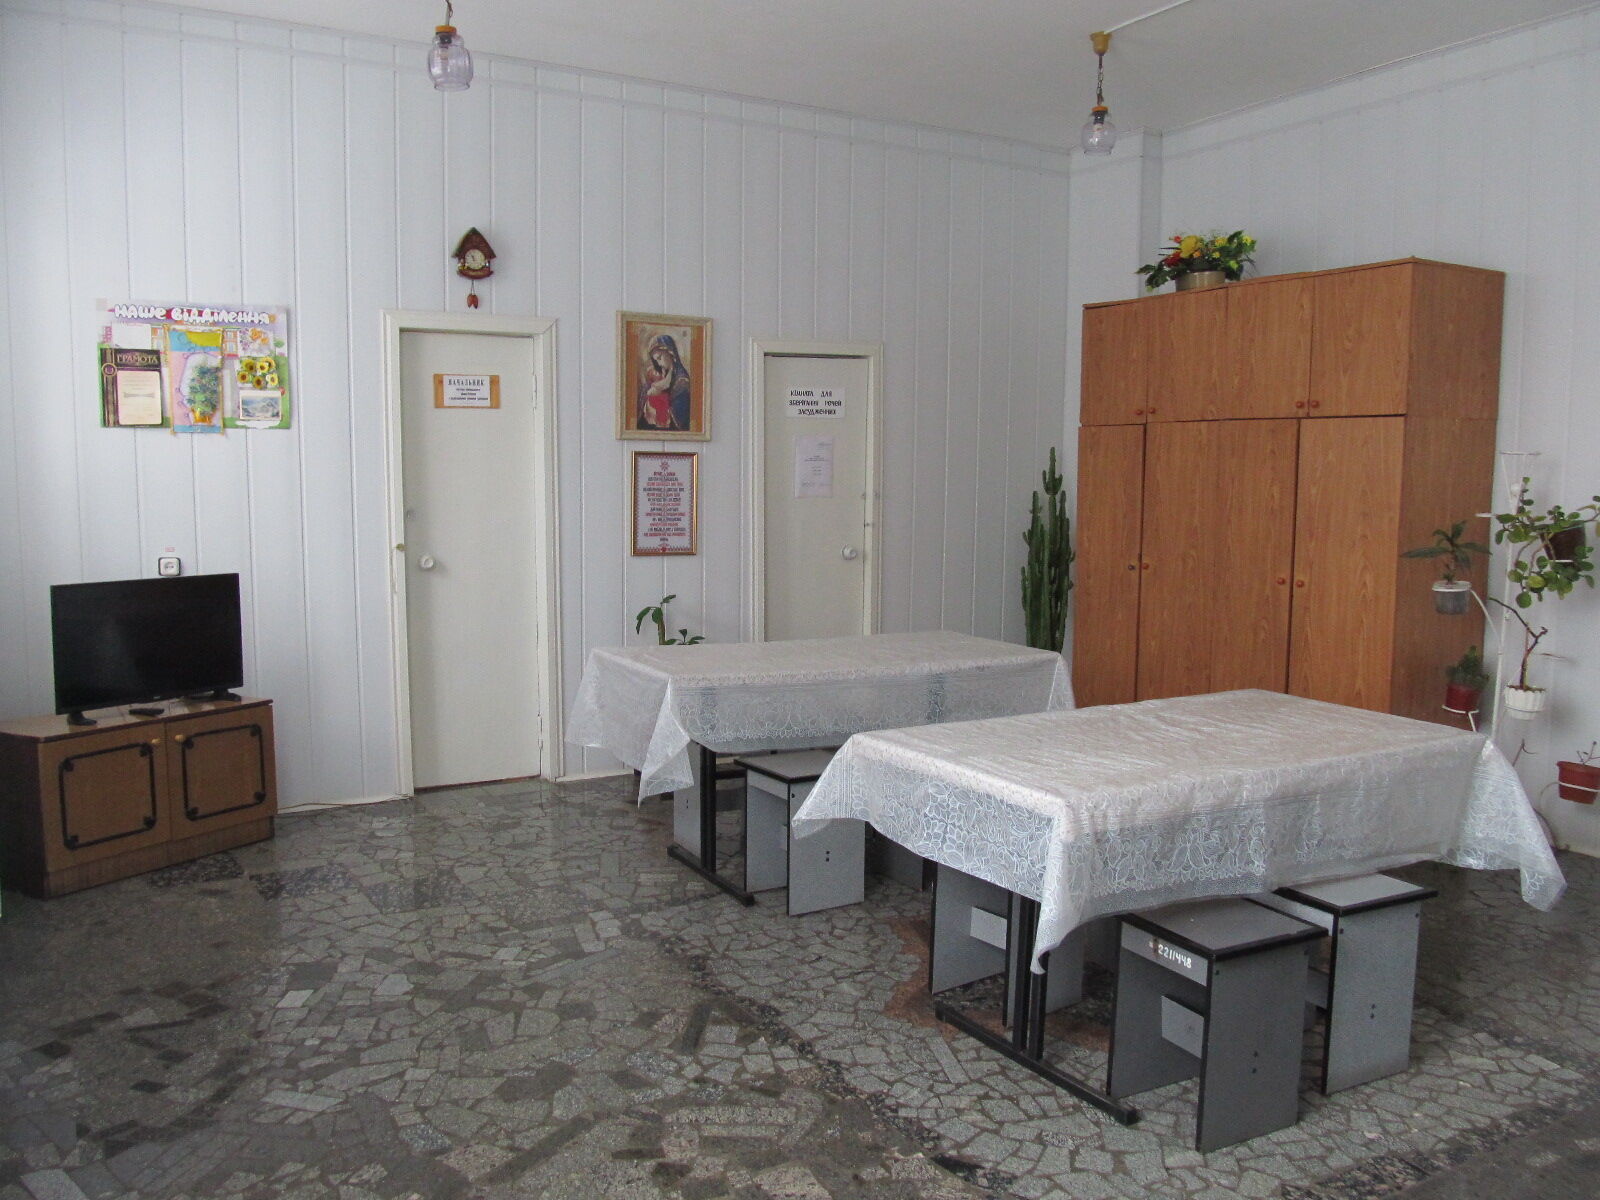 В секторе, где находится Зайцева, комнаты социально-воспитательной работы и приема пищи объединены в одну